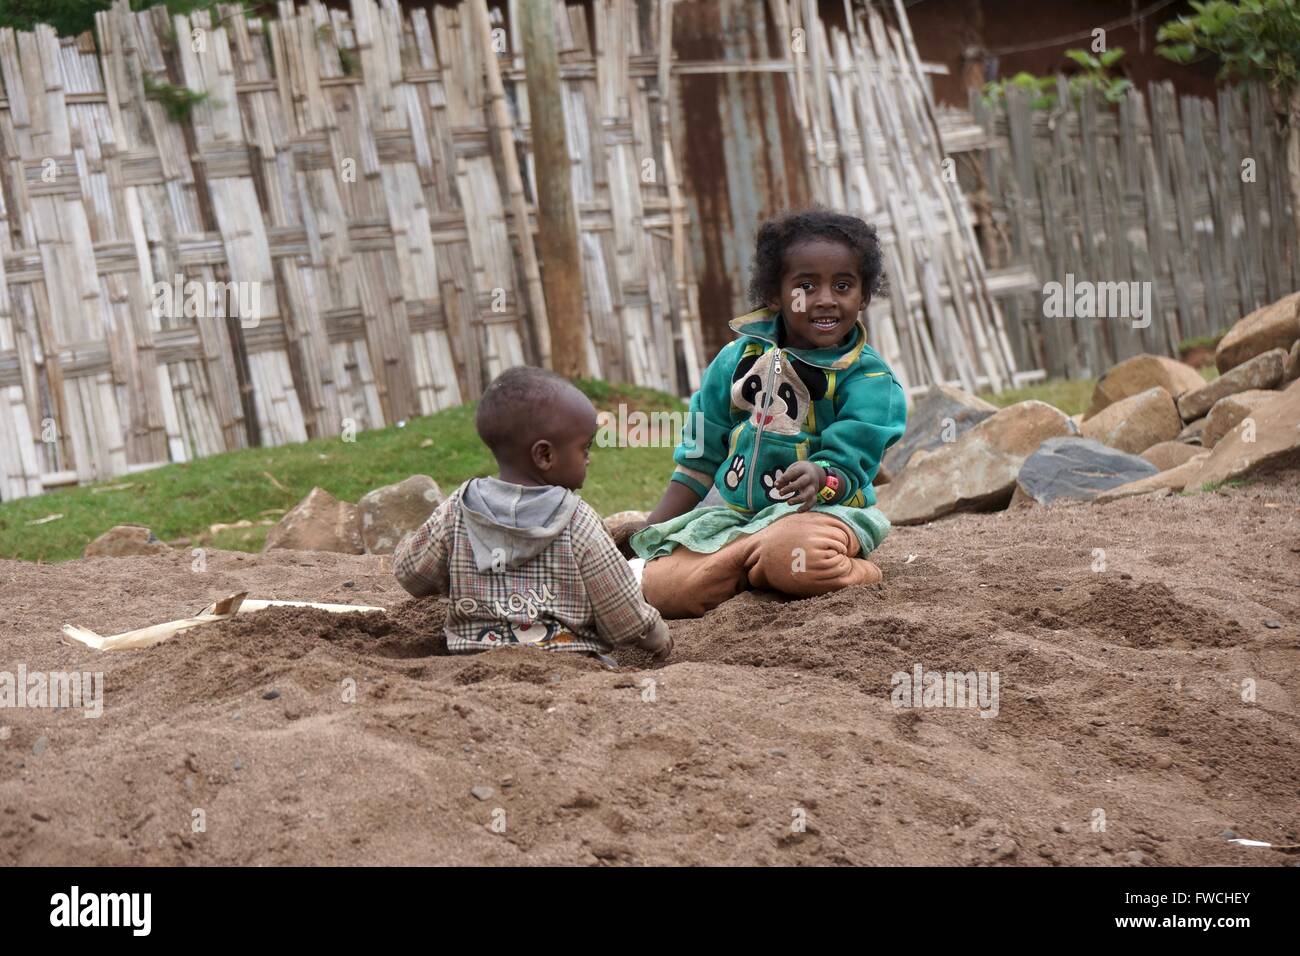 Zwei äthiopische Kinder in einem behelfsmäßigen Sandkasten spielen. Stockfoto